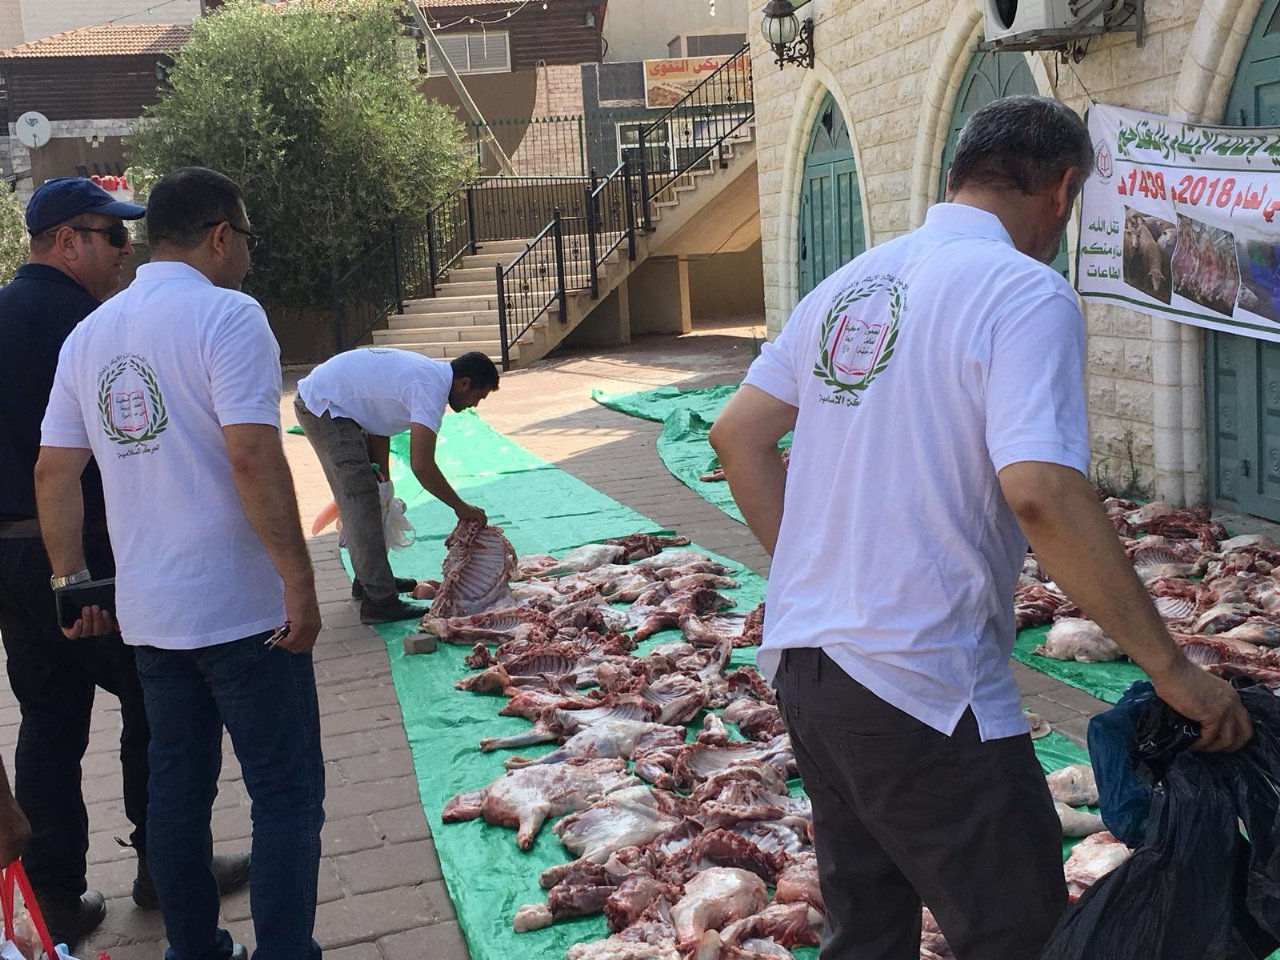 جمعية الإغاثة بطواقمها في الداخل الفلسطيني وخارجه تستعد لاستقبال 80 طـناً من أضاحي الـخير